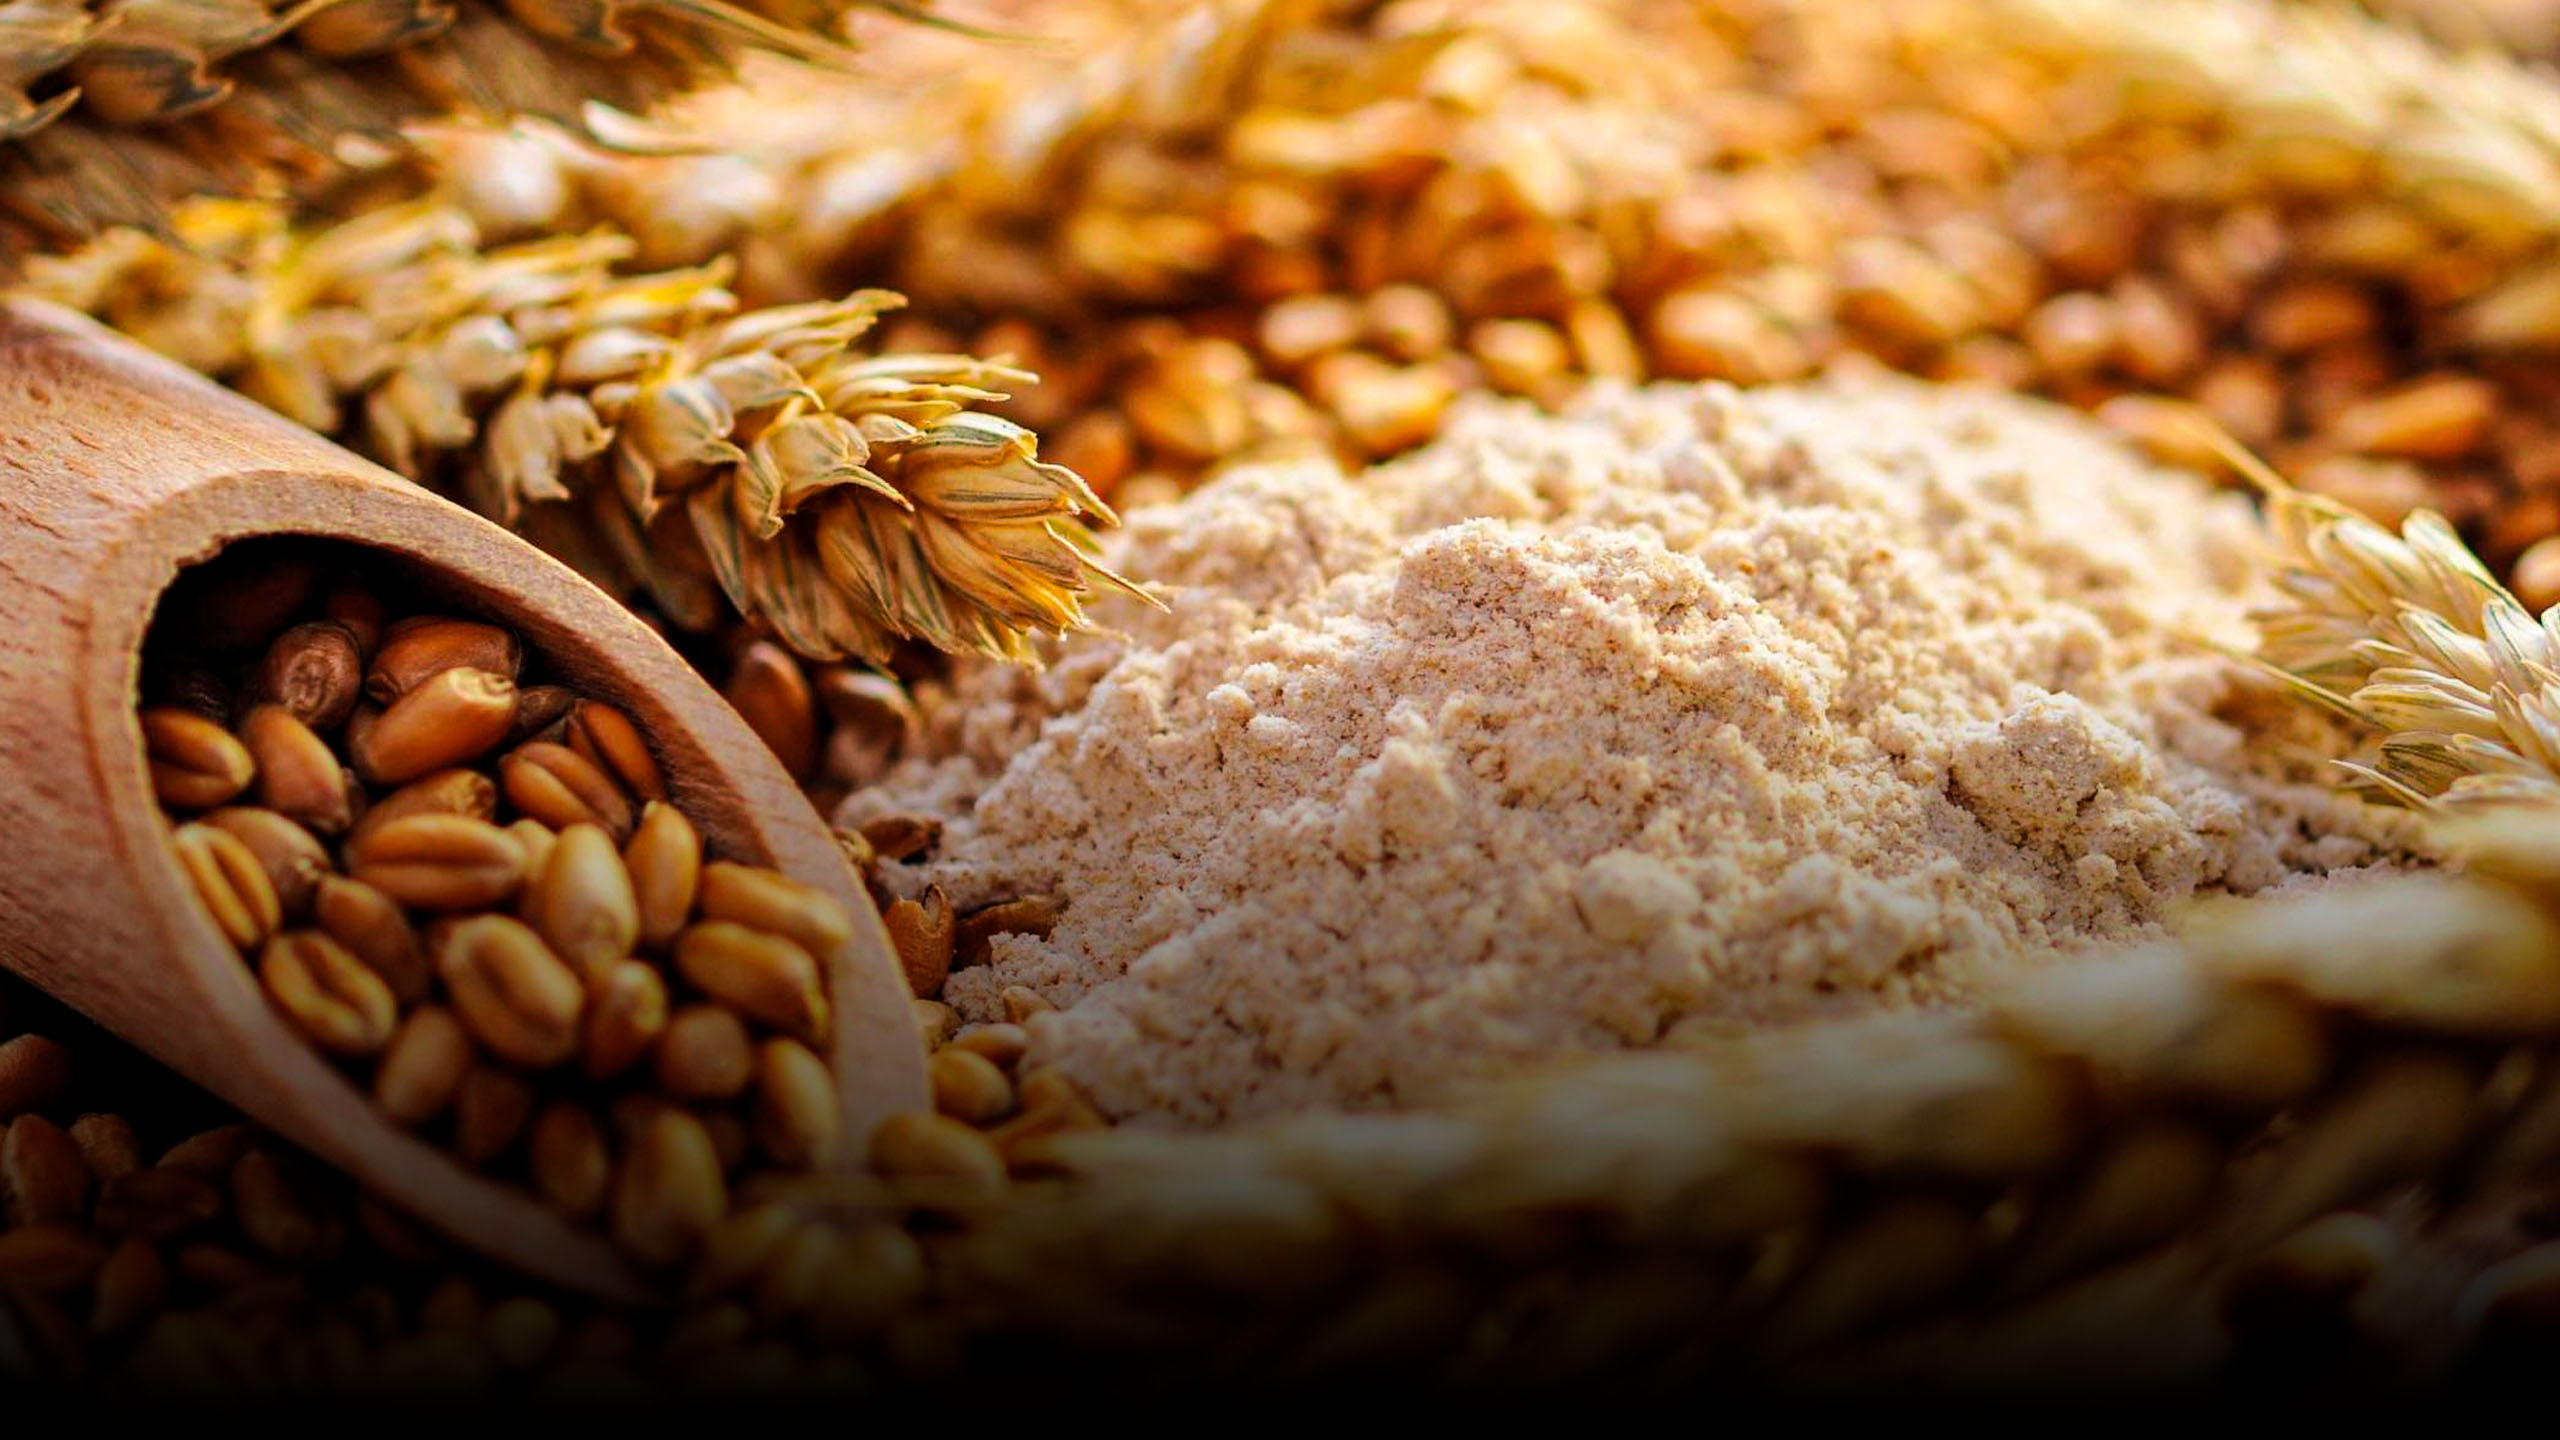 "Над пропастью без ржи": на сколько хватит пшеницы? / РЕН Новости